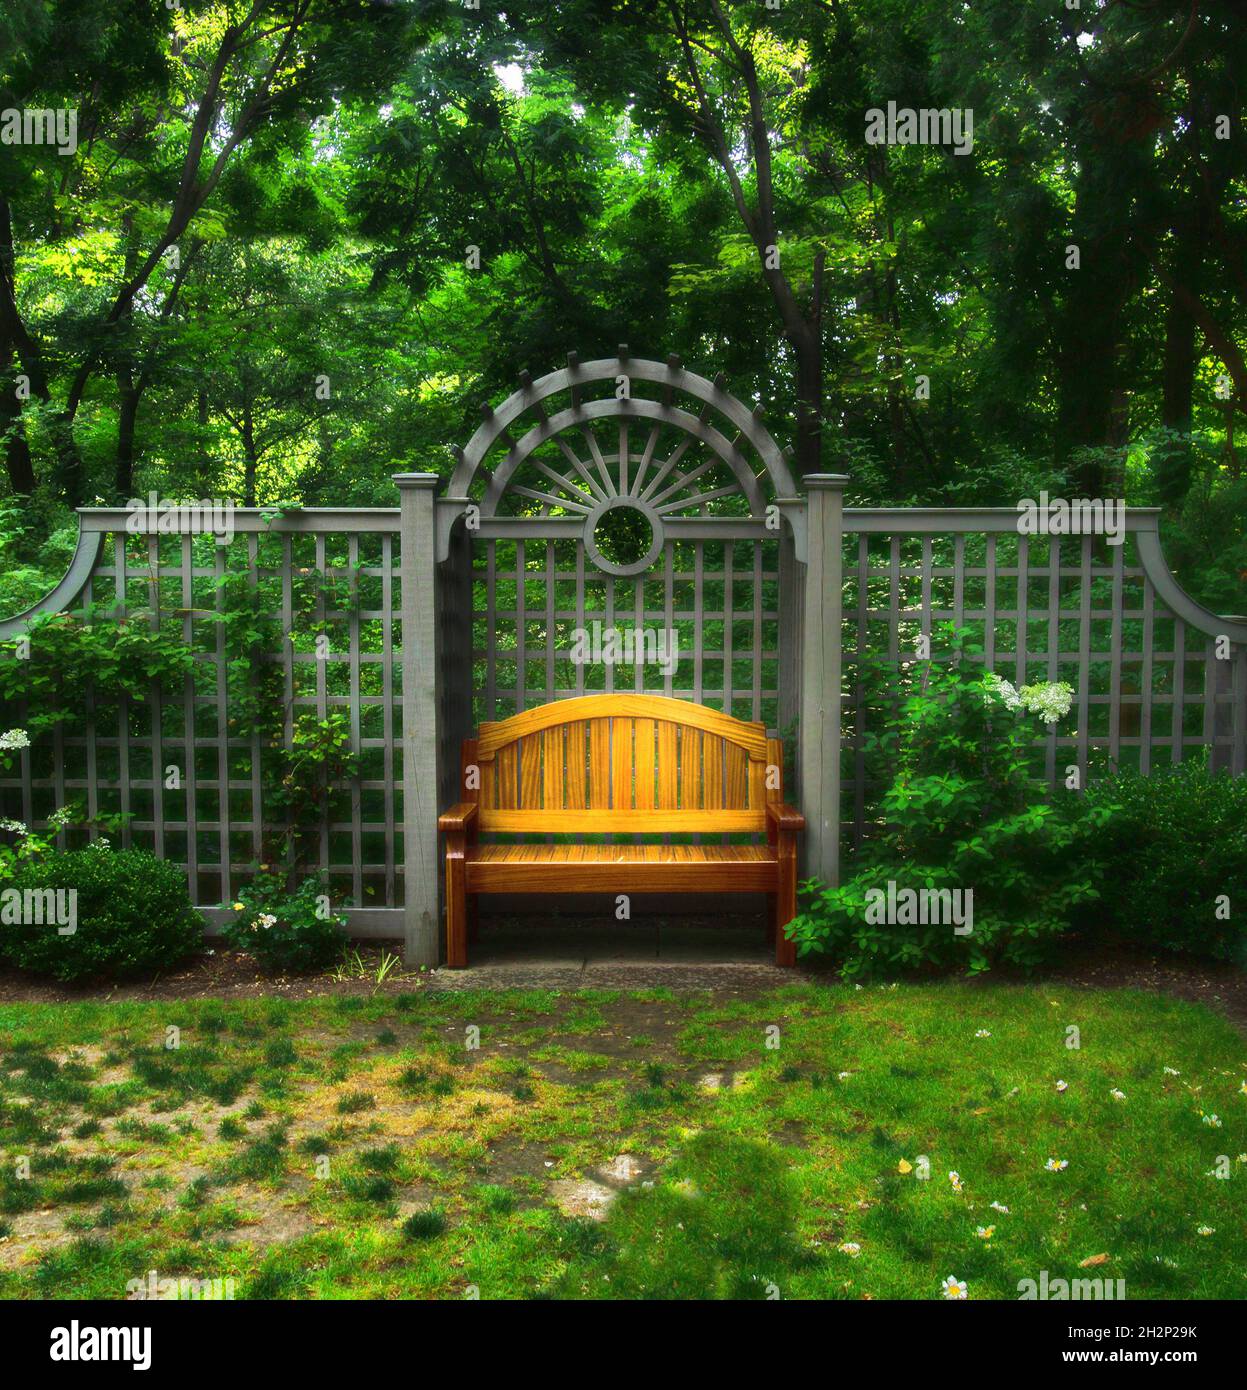 Bench in a formal garden, solitude, peace concept Stock Photo